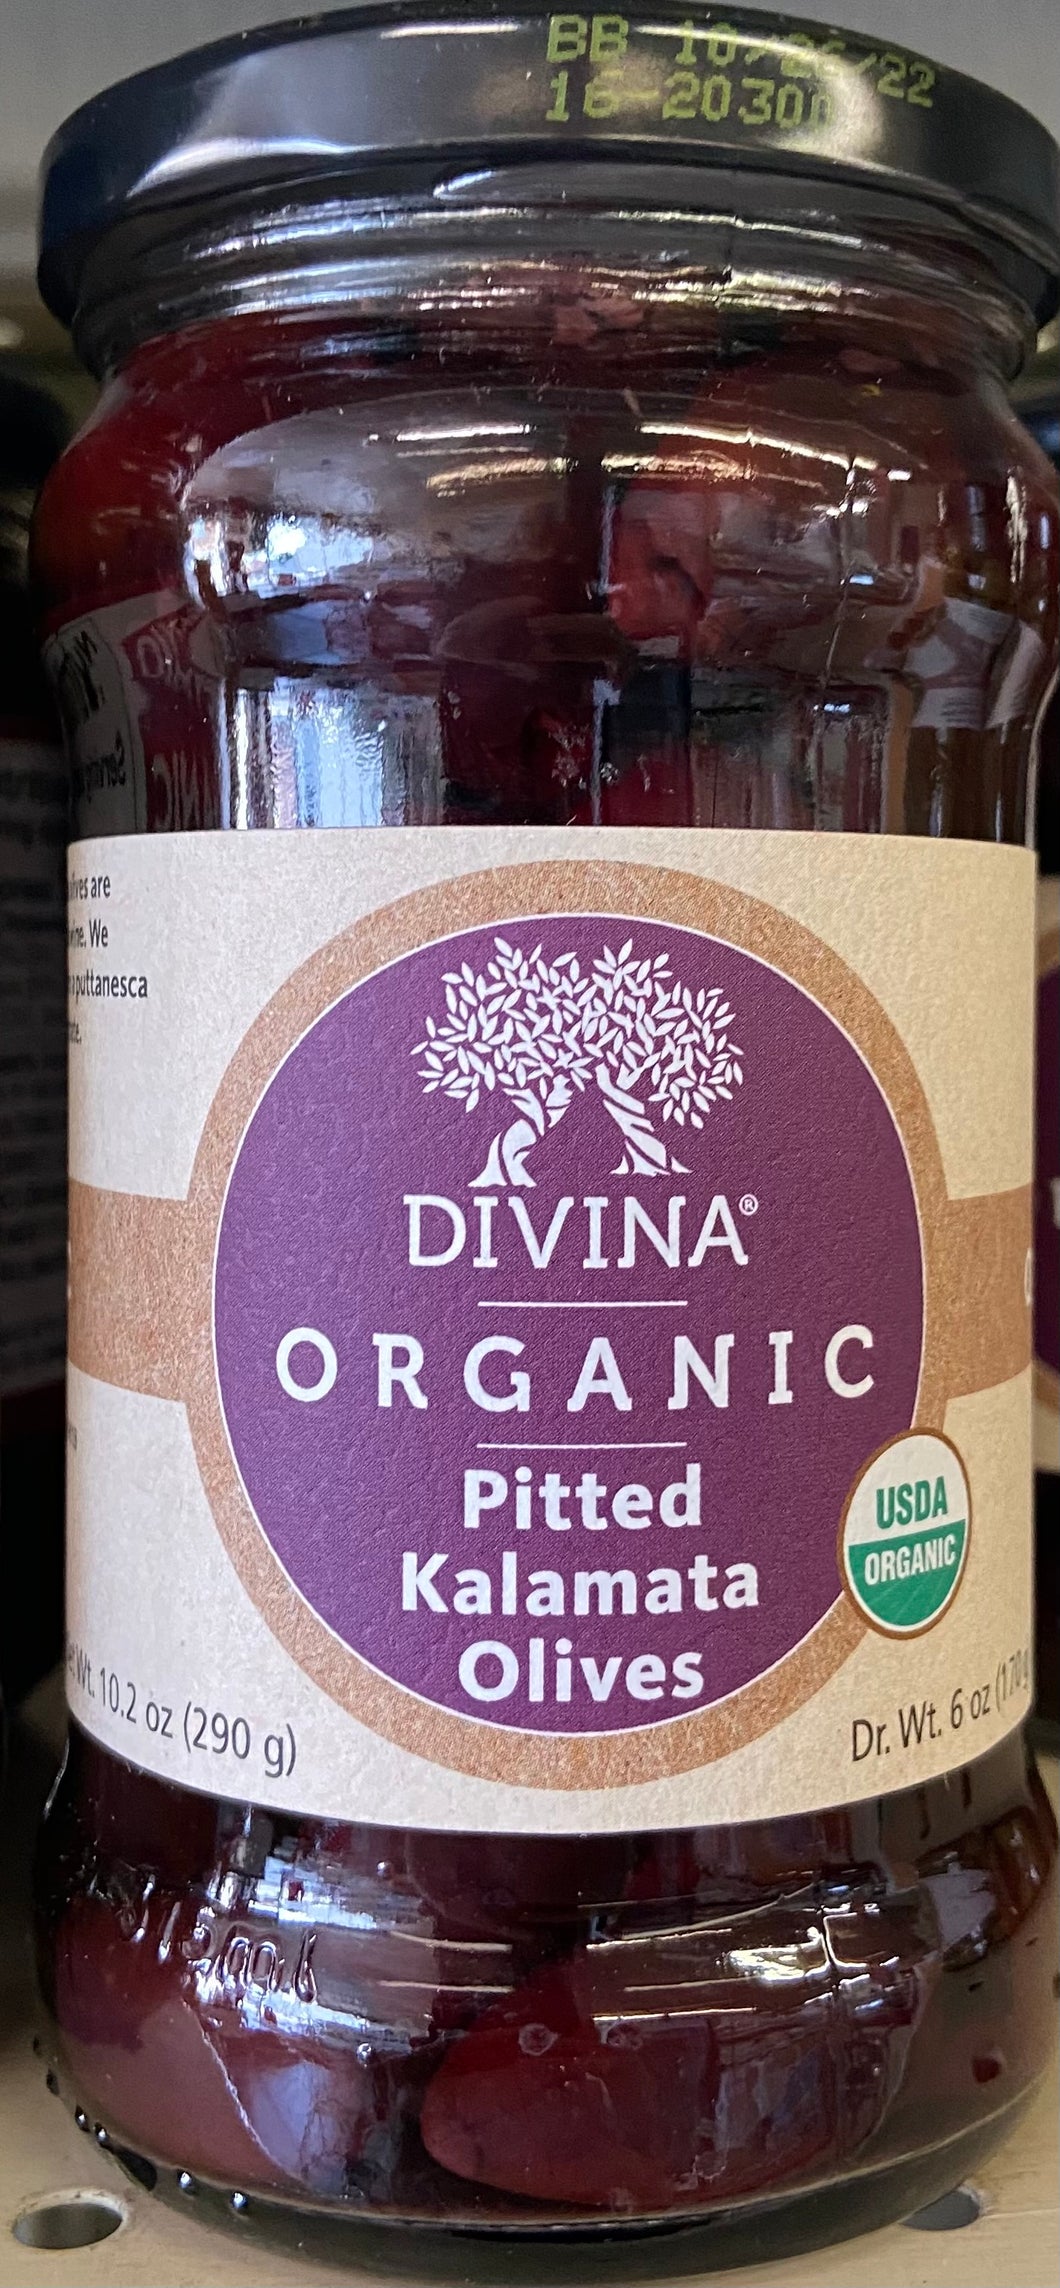 Olives, Pitted Kalamata, Divina, Organic, 6 oz